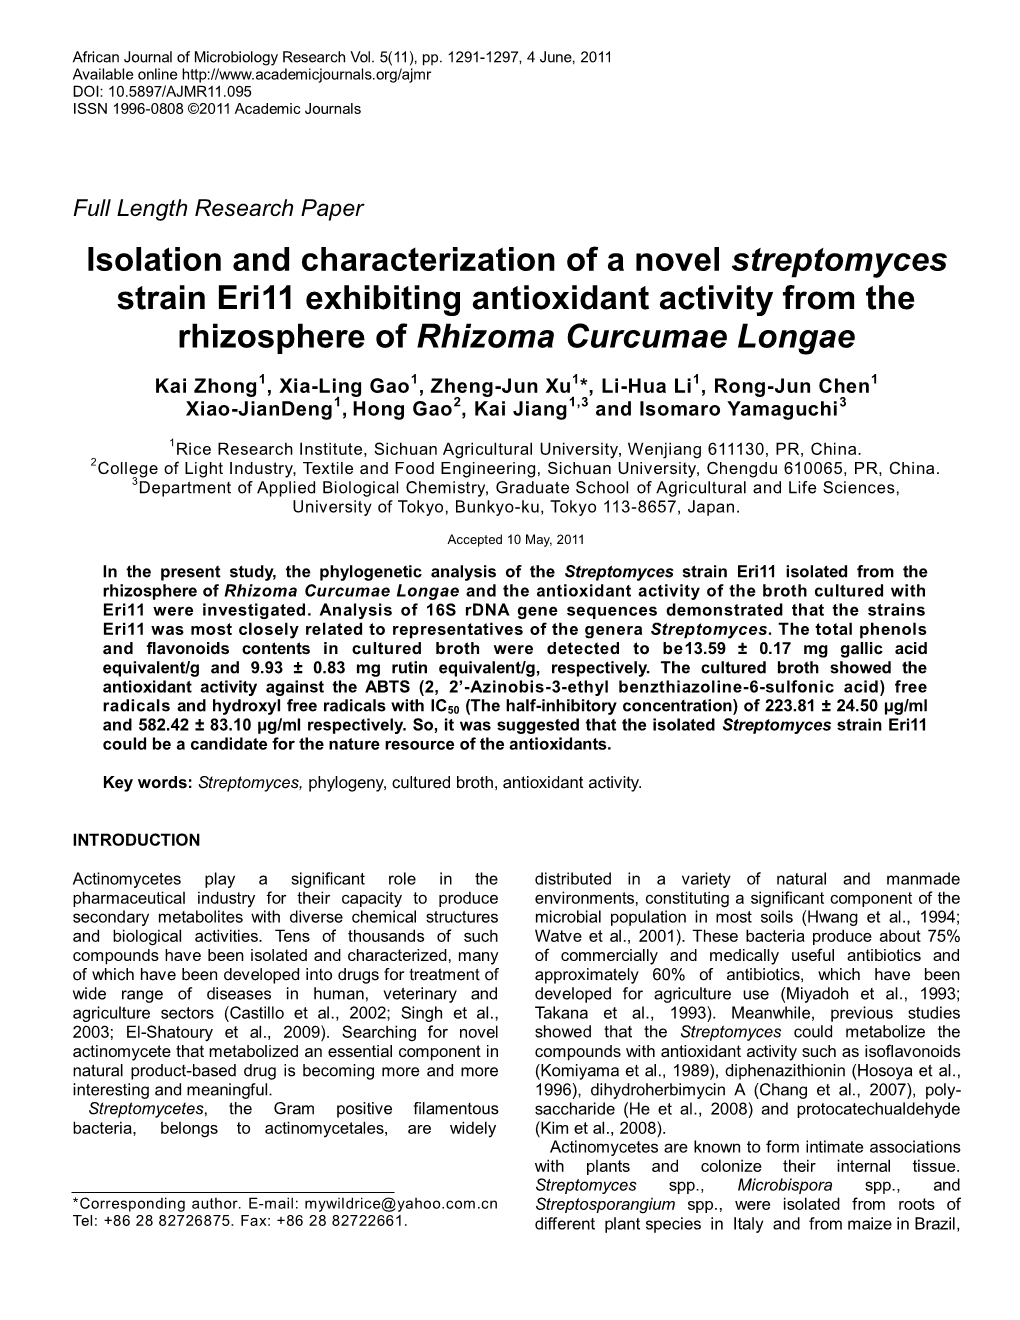 Isolation and Characterization of a Novel Streptomyces Strain Eri11 Exhibiting Antioxidant Activity from the Rhizosphere of Rhizoma Curcumae Longae